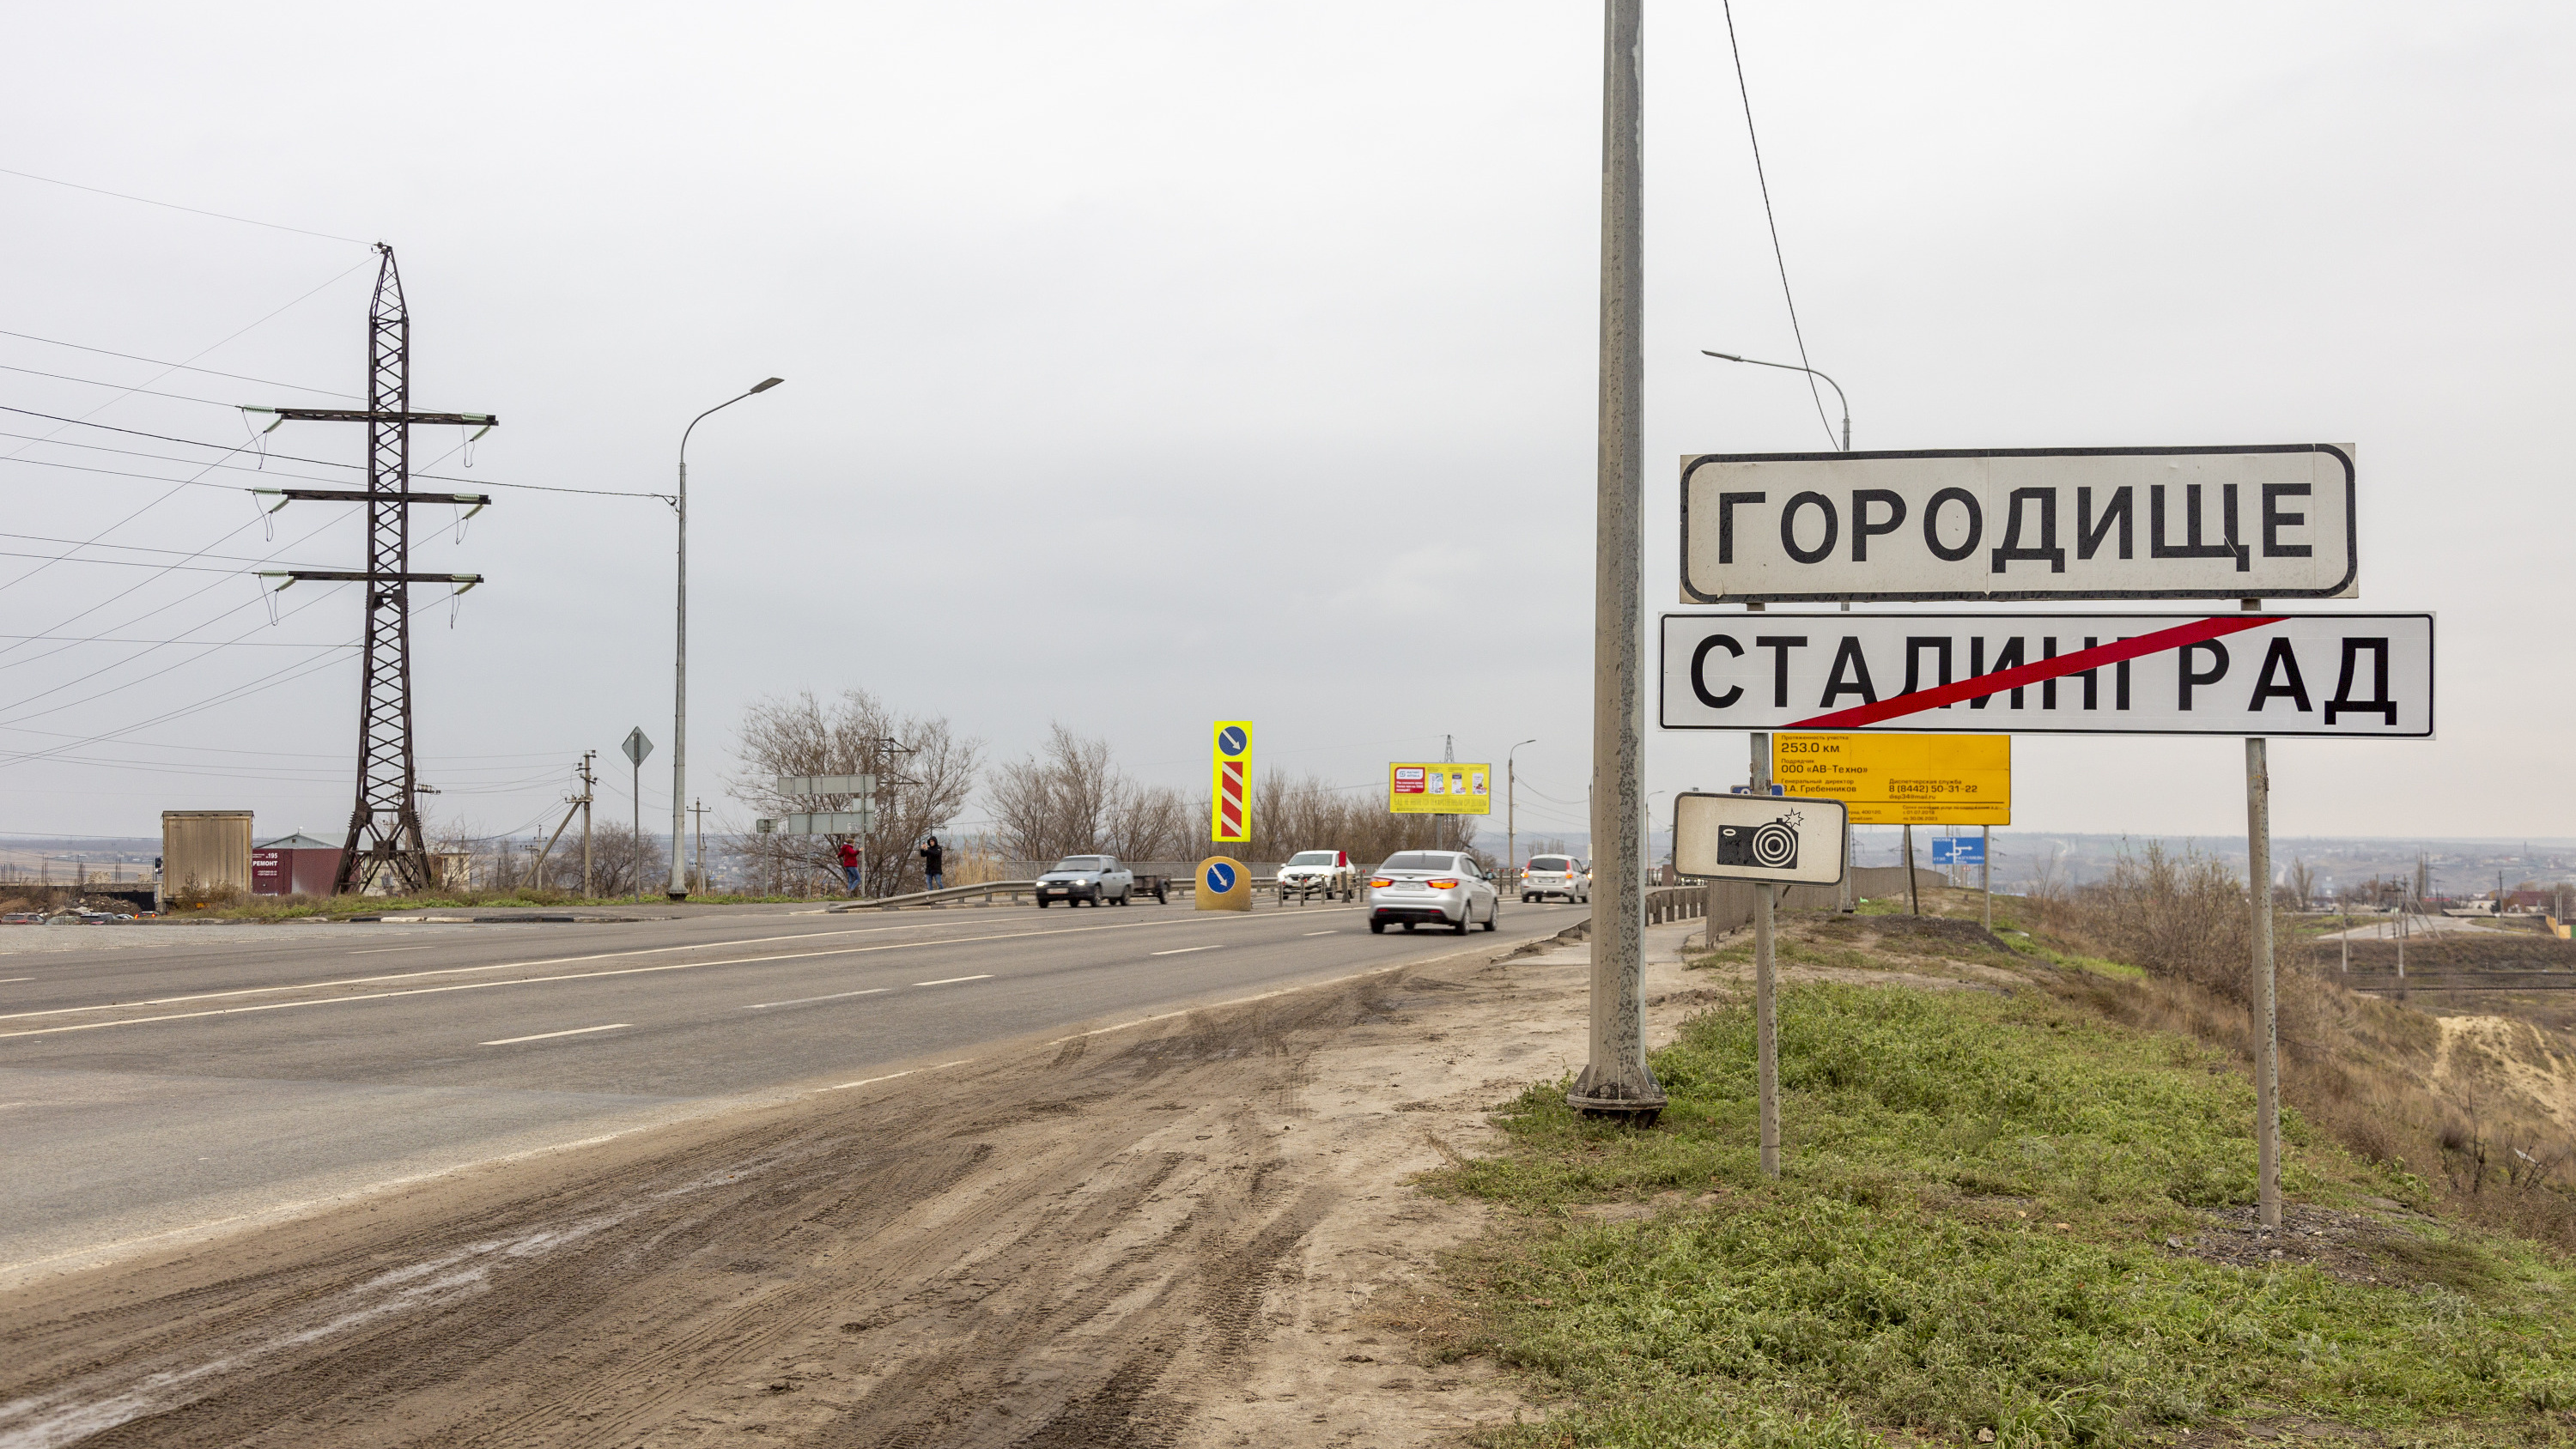 «Не верьте в подобные интриги»: экс-мэр Волгограда высказался о переименовании в Сталинград